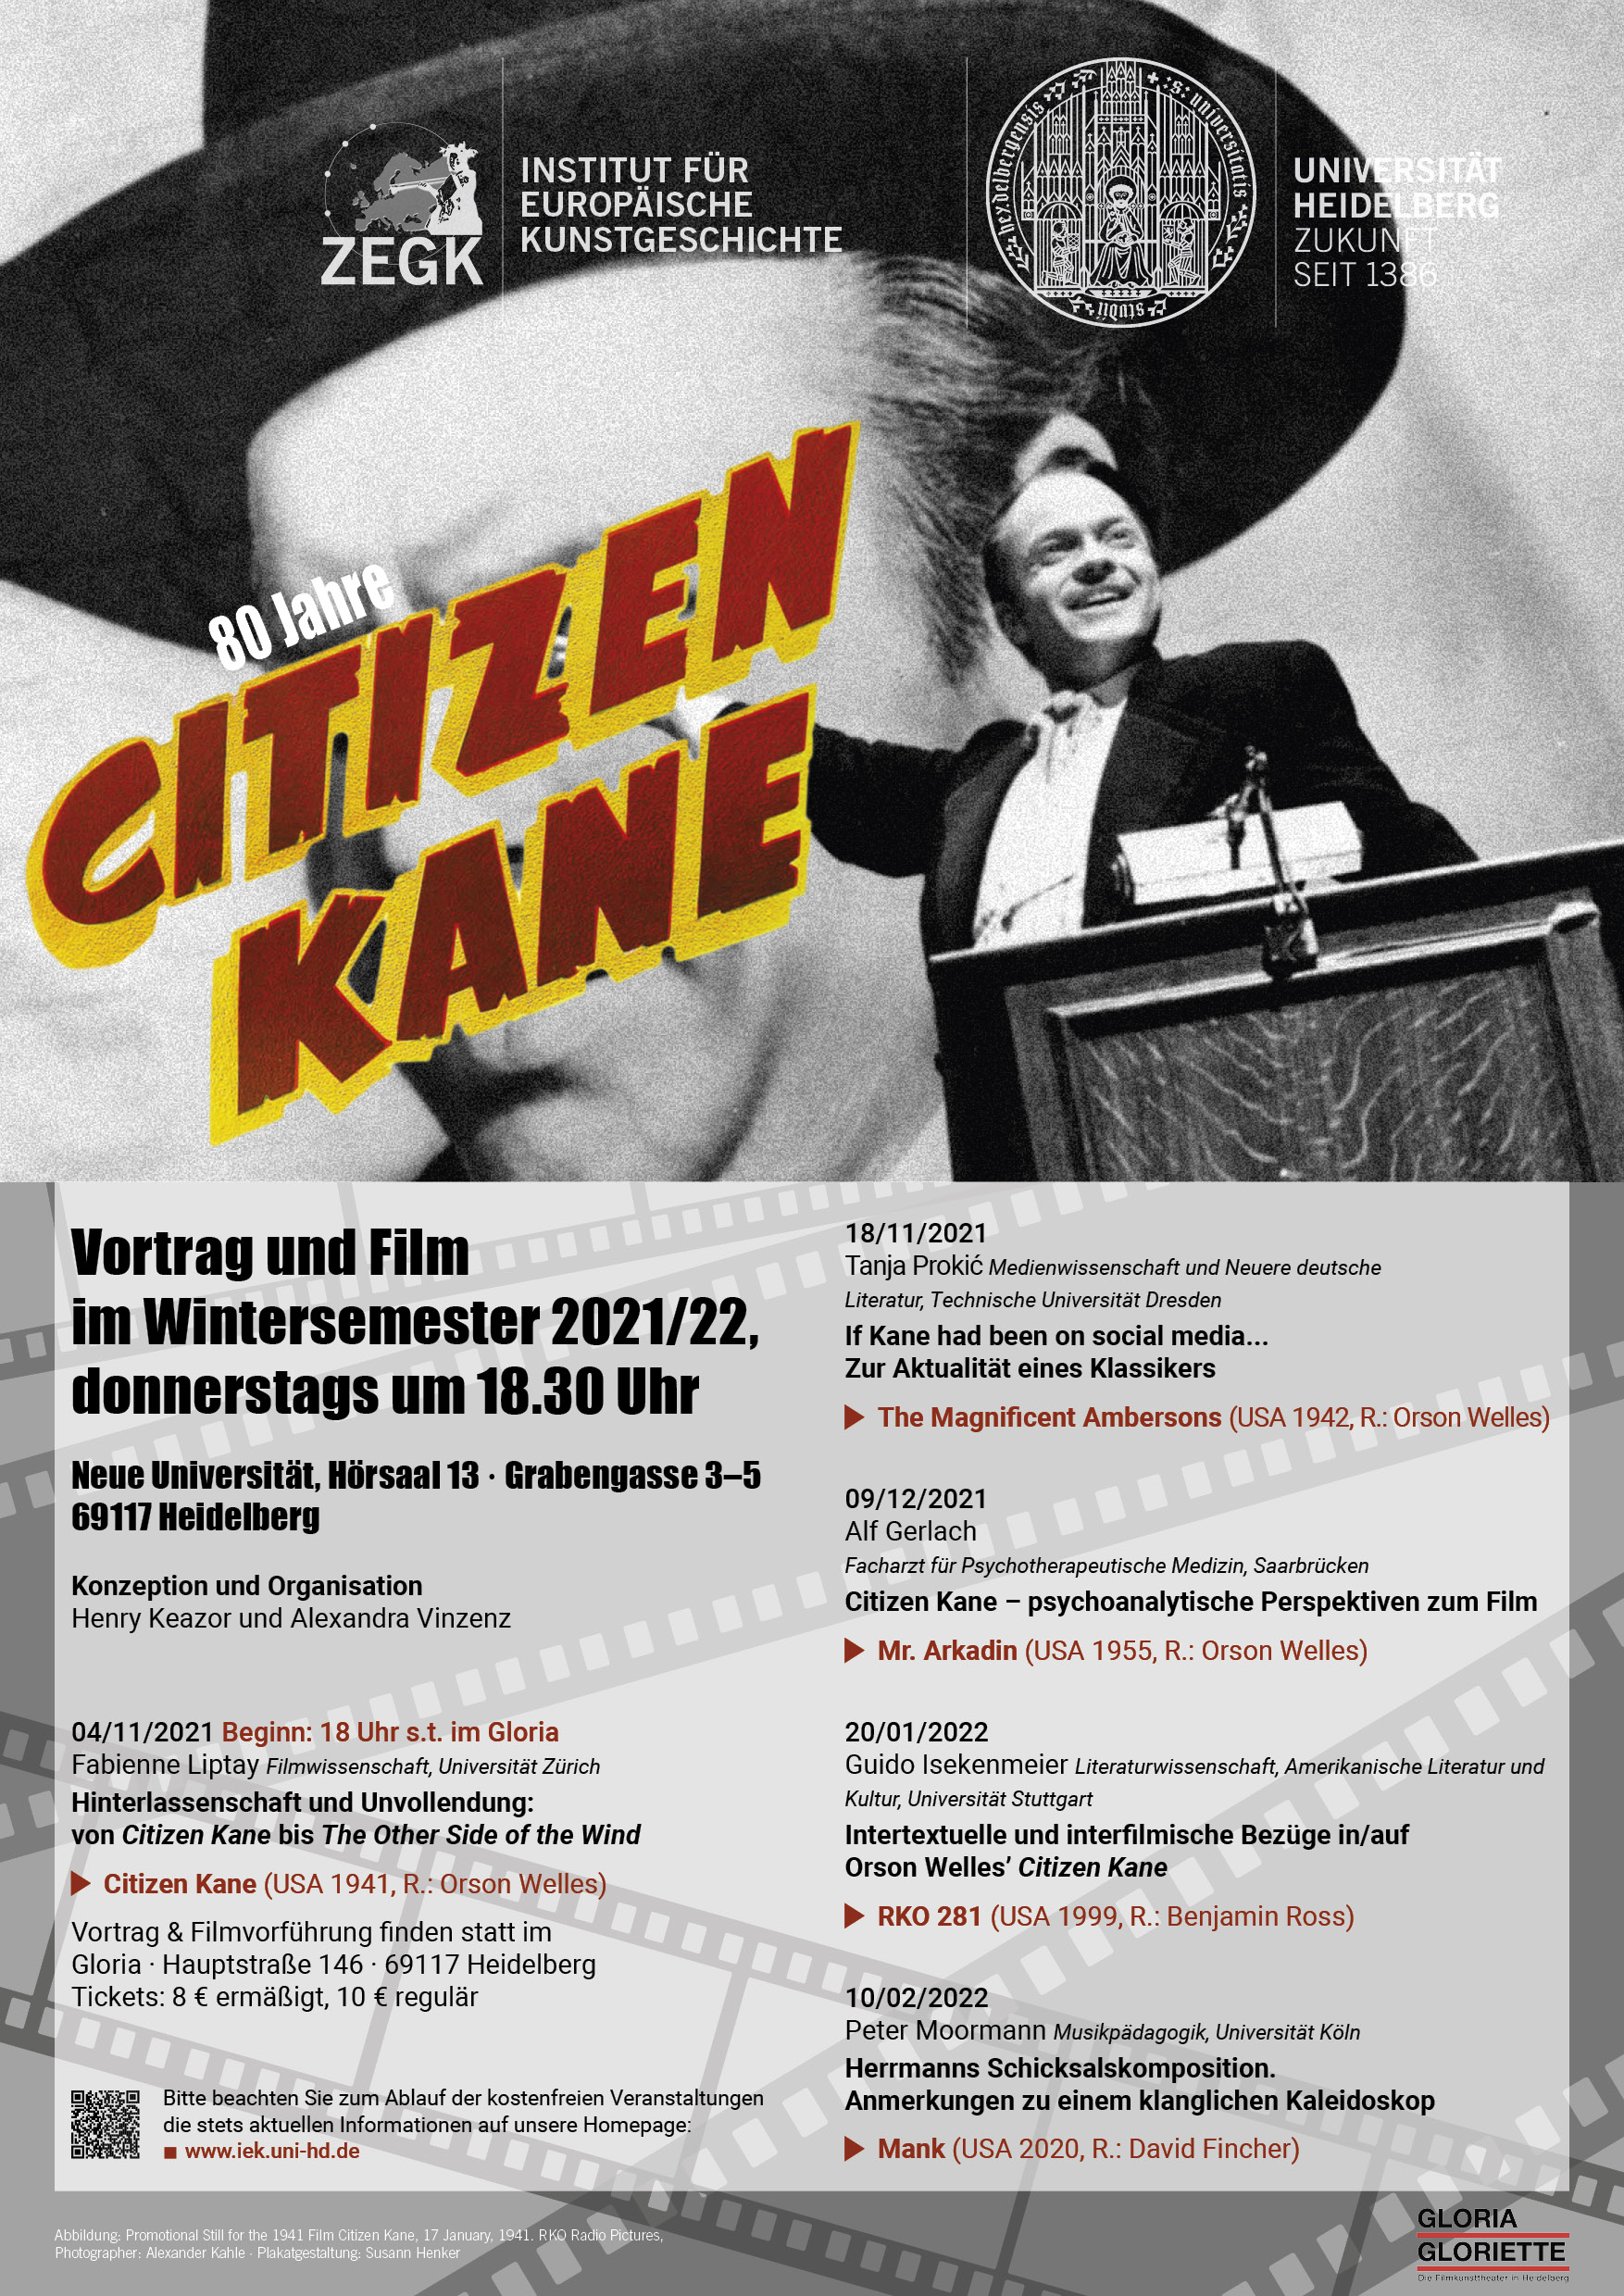 80 Jahre Citizen Kane